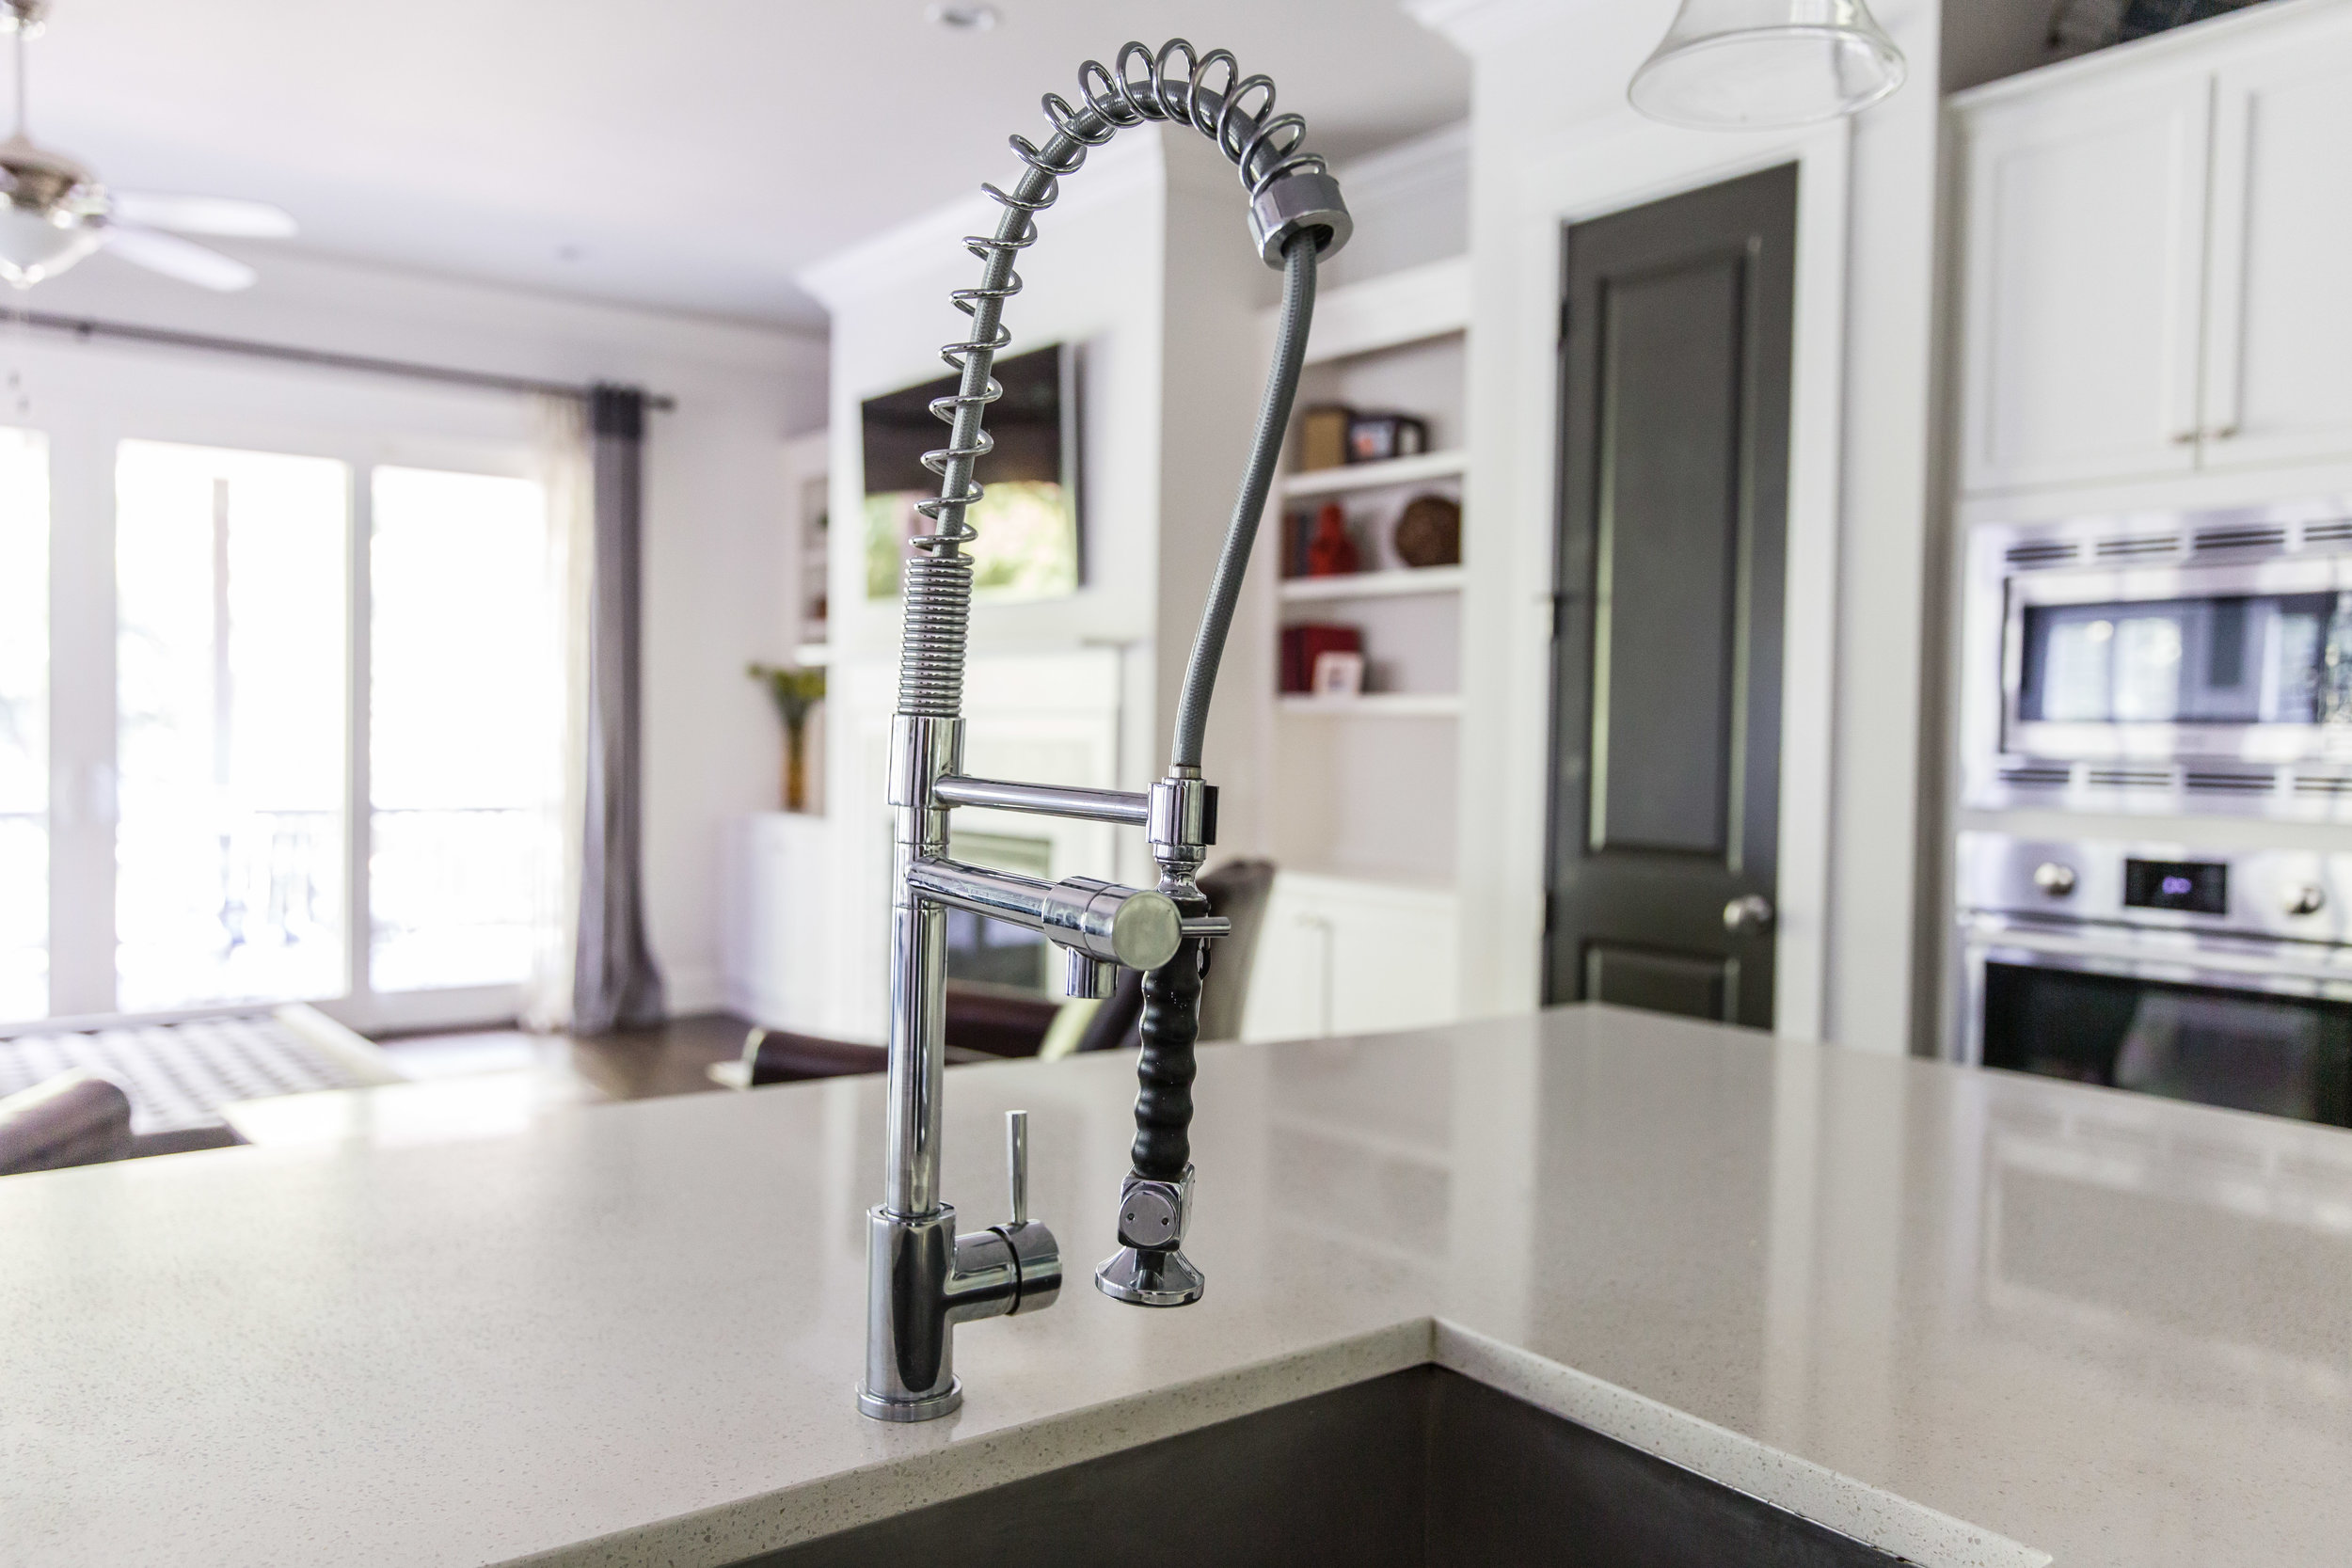 900 S Candler-Kitchen Sink.jpg